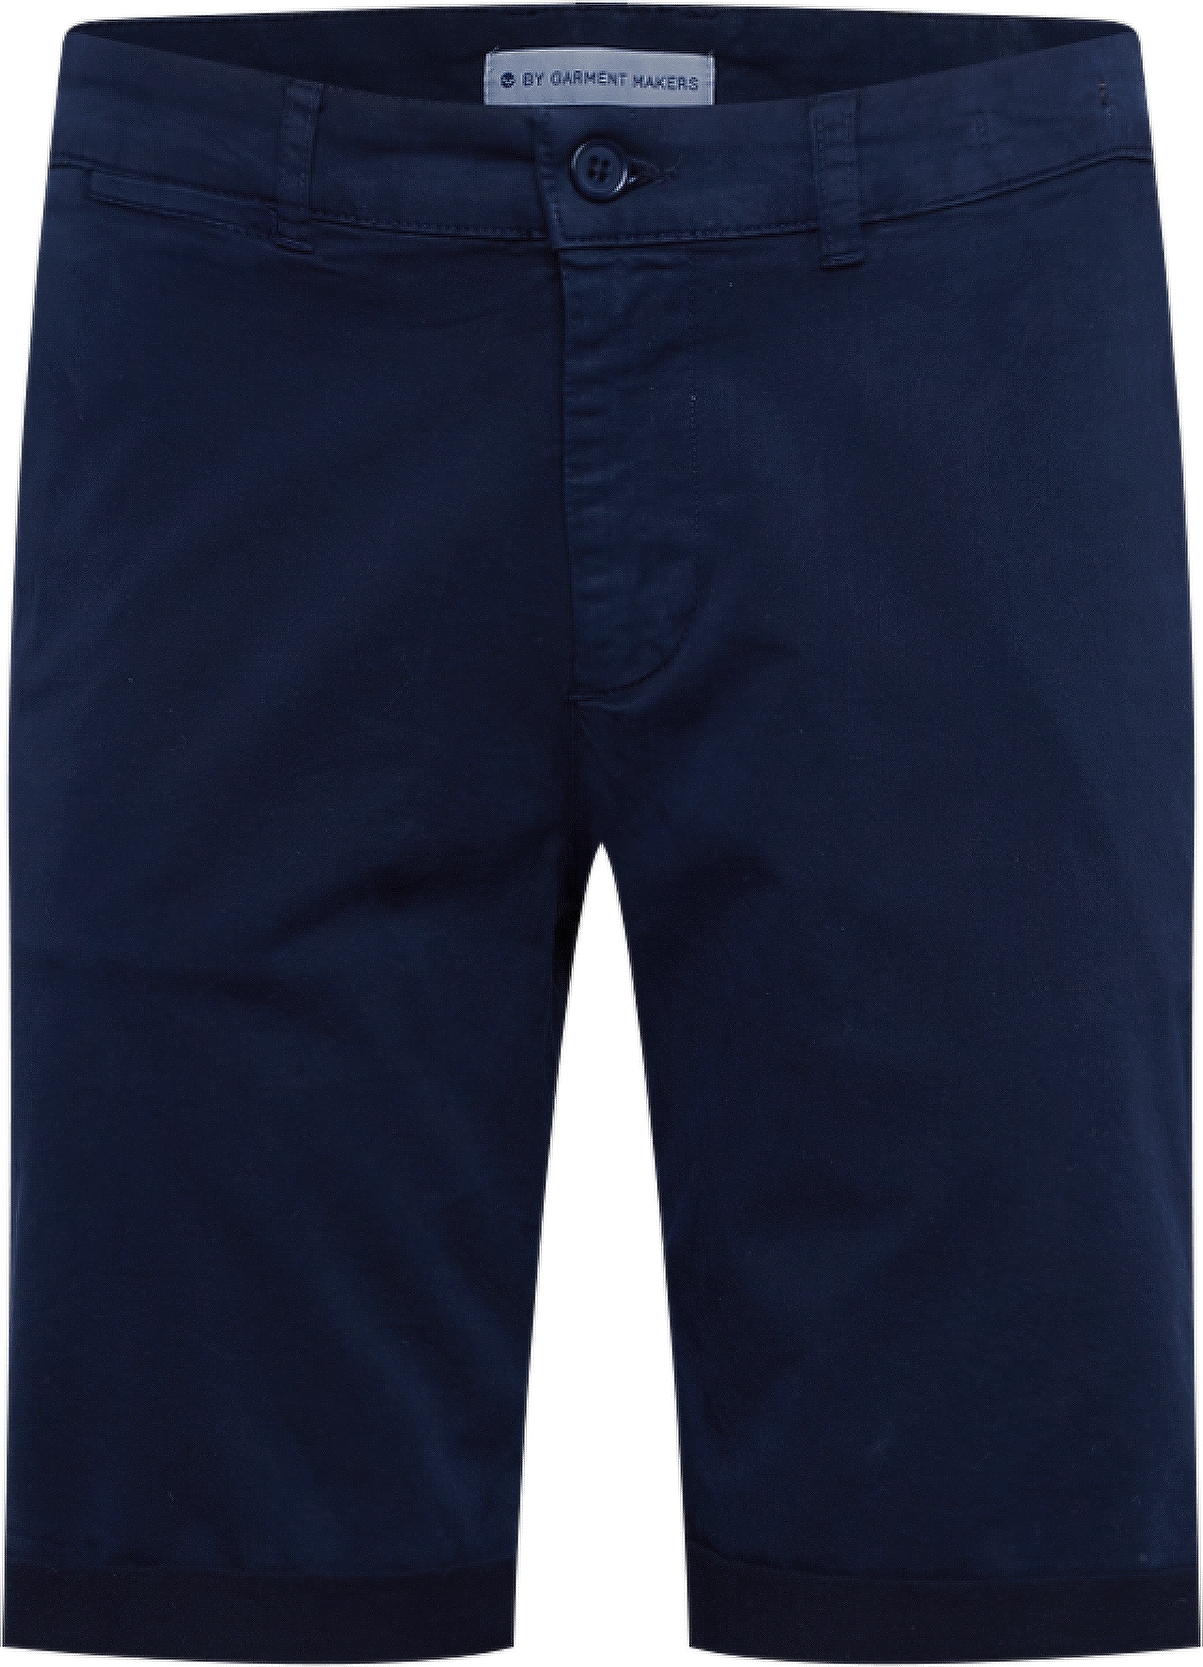 By Garment Makers Chino kalhoty námořnická modř